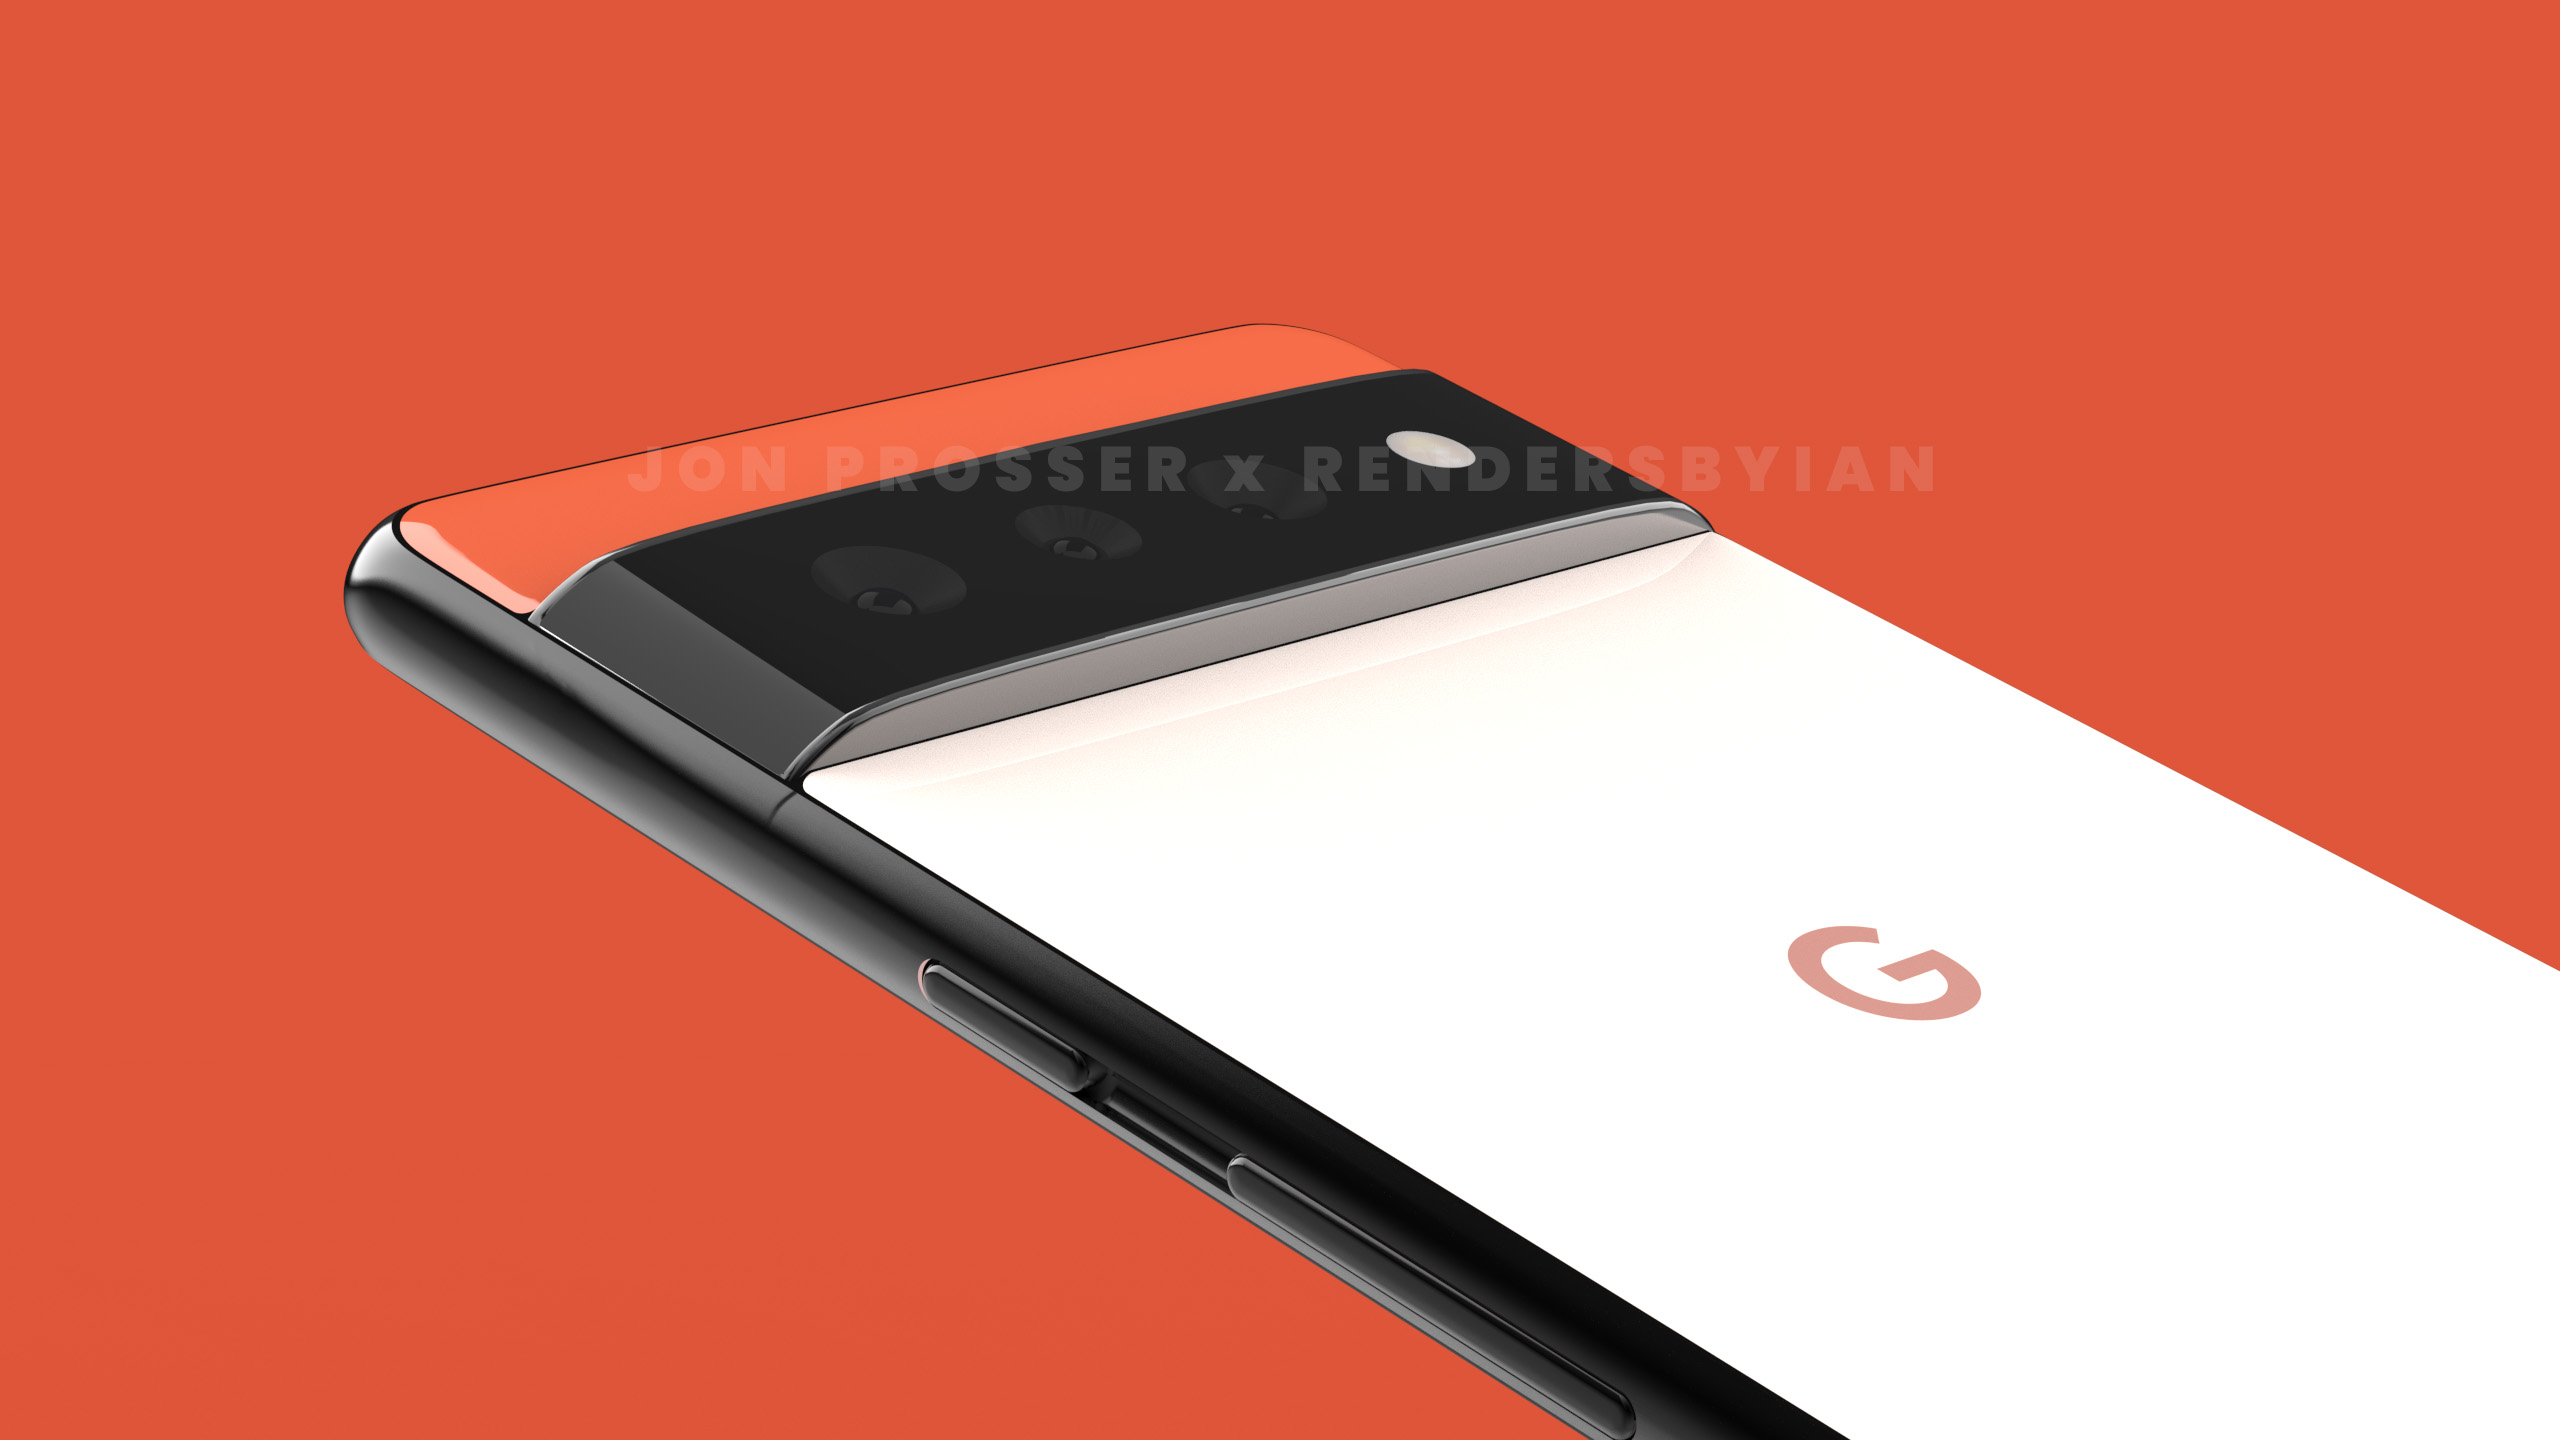 Smartphones Mit Einem Einzigartigen Design John Prosser Zeigte Wie Google Pixel 6 Und Google Pixel 6 Pro Aussehen Werden Gagadget Com